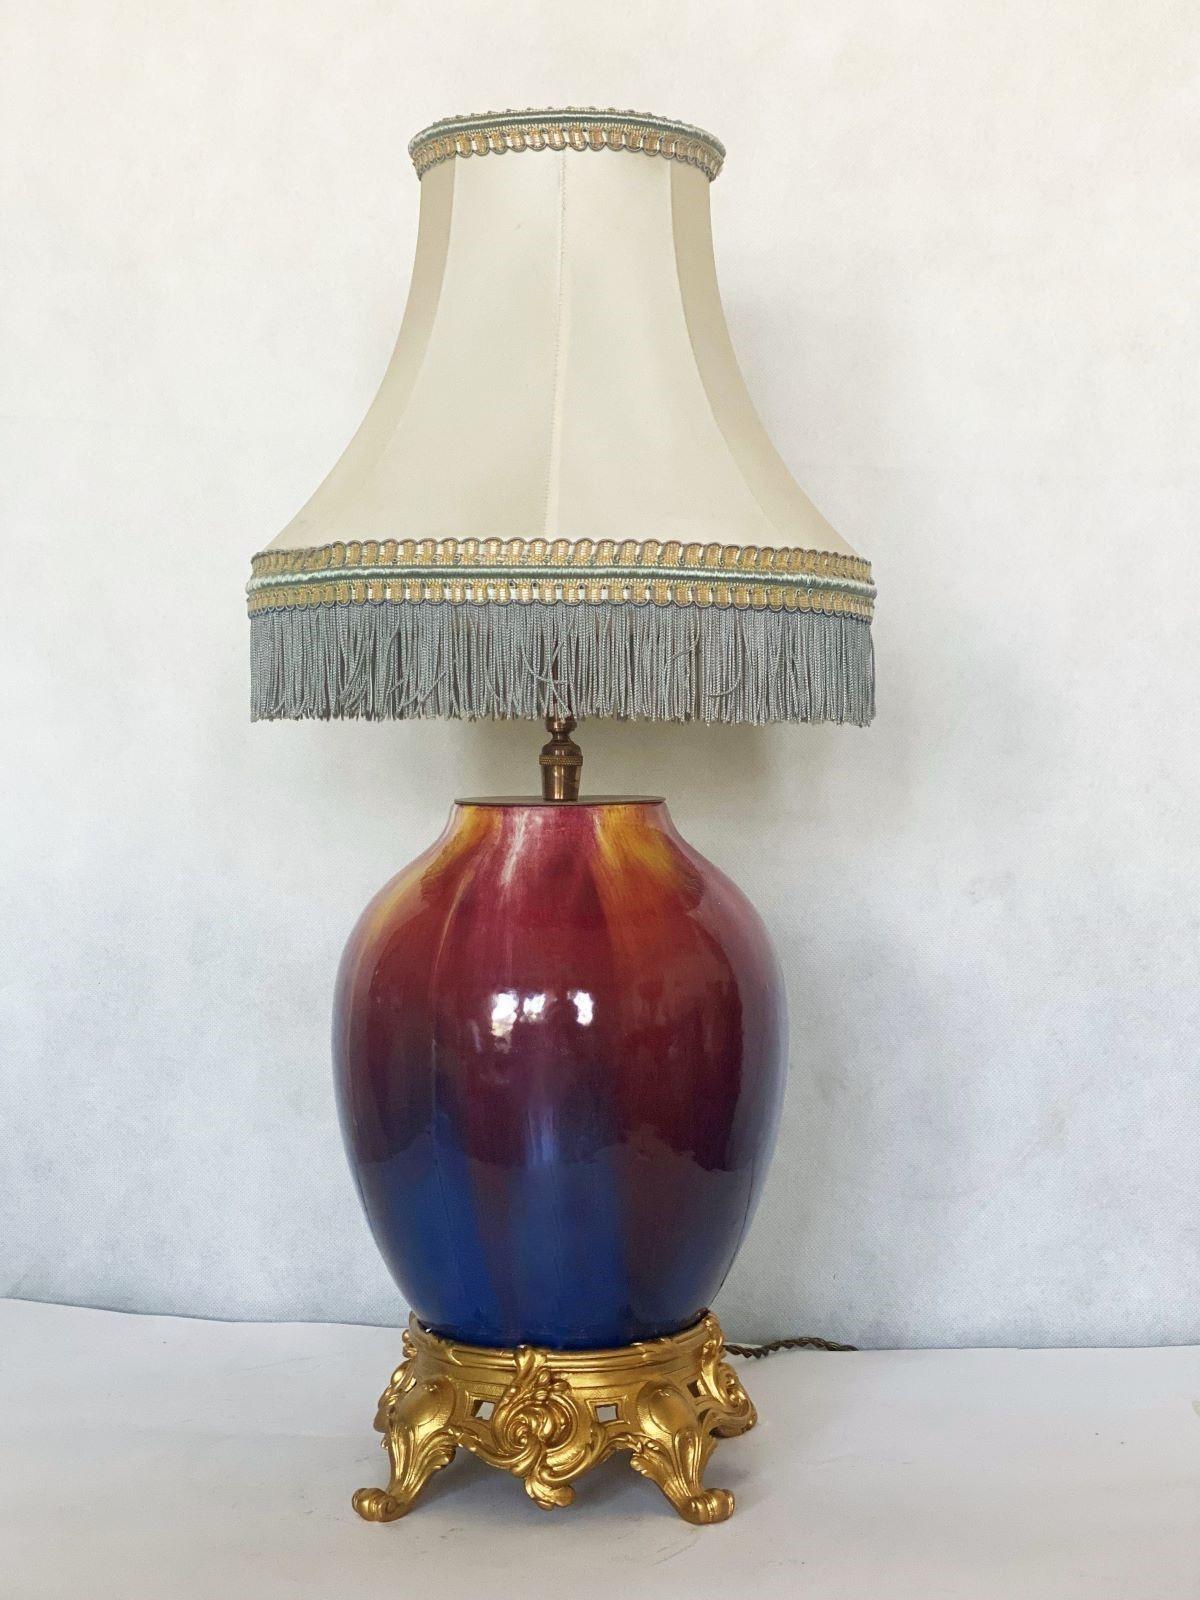 Une grande lampe de table rare en céramique fabriquée à la main, France 1930-1939. Peint à la main et émaillé de couleurs vibrantes, abat-jour original en soie de couleur ivoire avec des franges bleu clair. Une douille pour une ampoule de grande